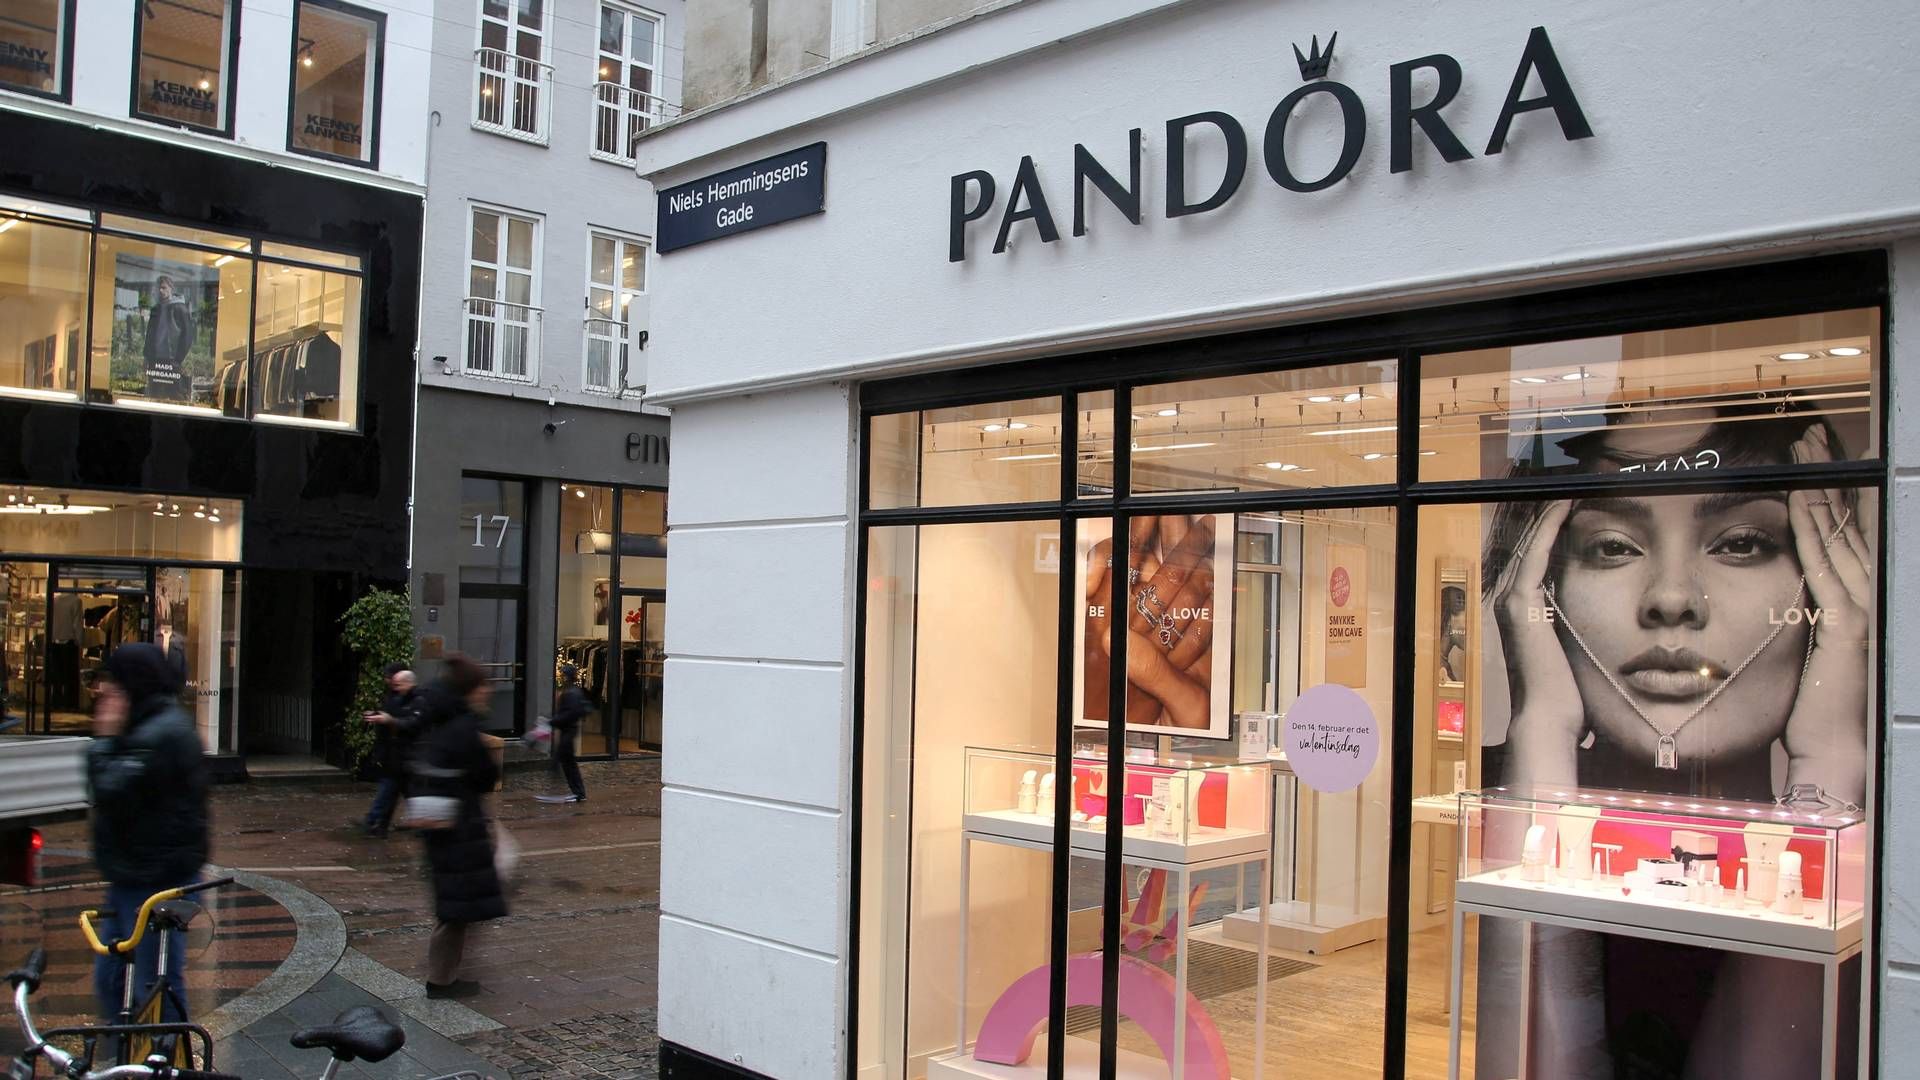 Anders Boyer, finansdirektør i Pandora, anerkender risikoen for at blive beskyldt for genderwashing, når strafrenten, taget Pandoras indtjening i betragtning, ikke er højere. | Foto: Tom Little/Reuters/Ritzau Scanpix